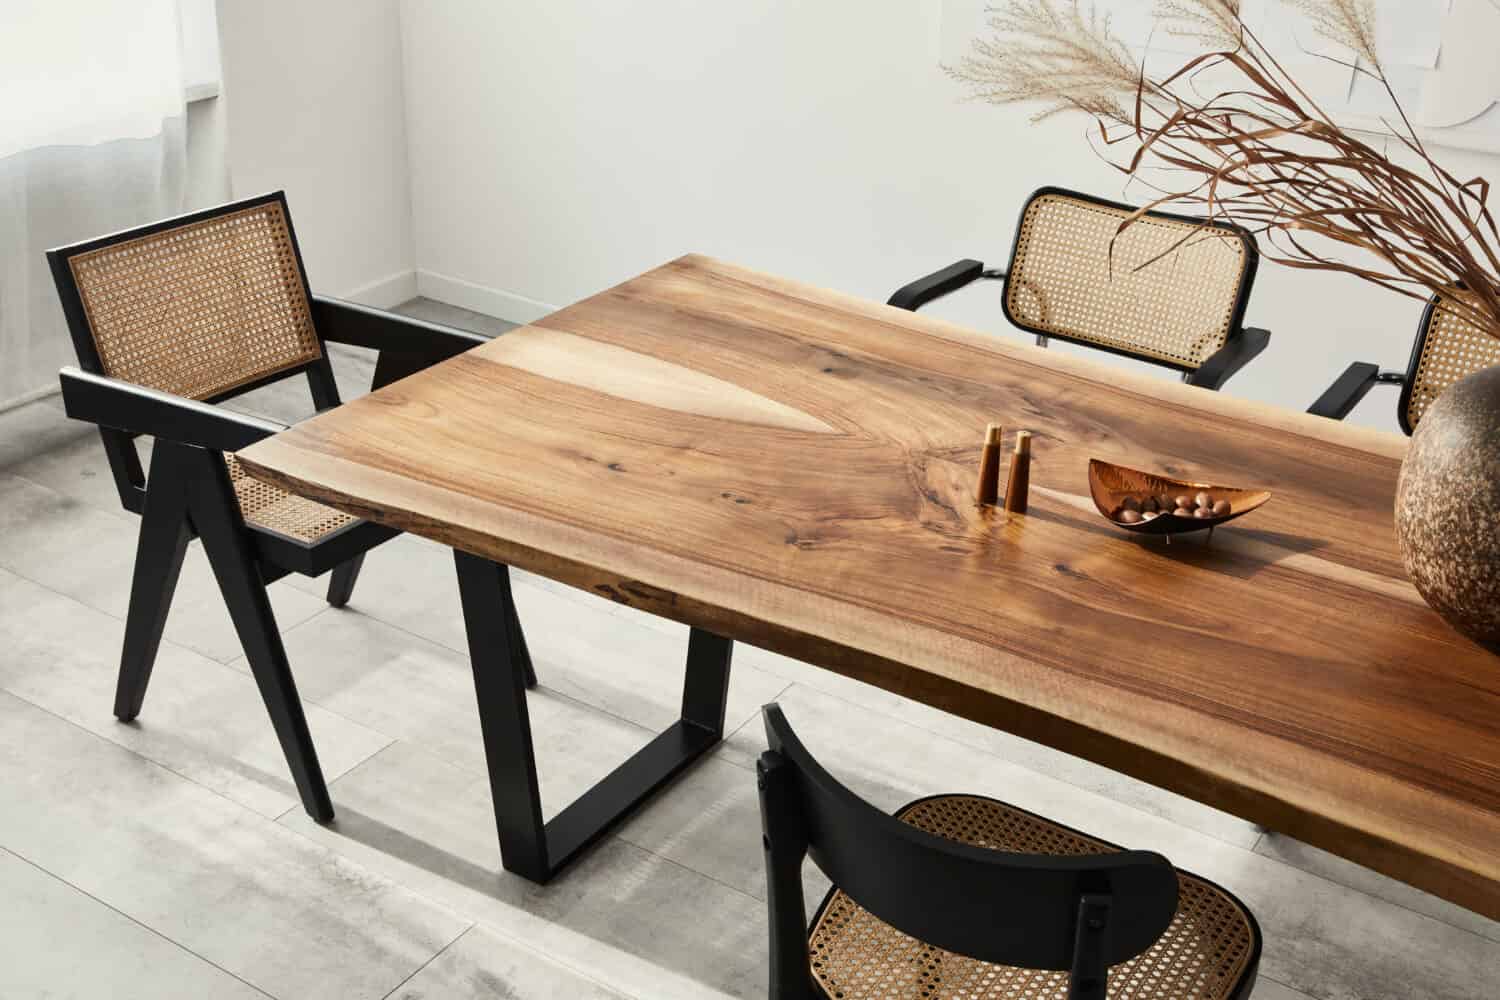 Interior design dell'elegante sala da pranzo con tavolo in legno di famiglia, sedie moderne, piatto con noci, saliera e pepiera.  Pavimento di cemento.  Muro bianco.  Modello.